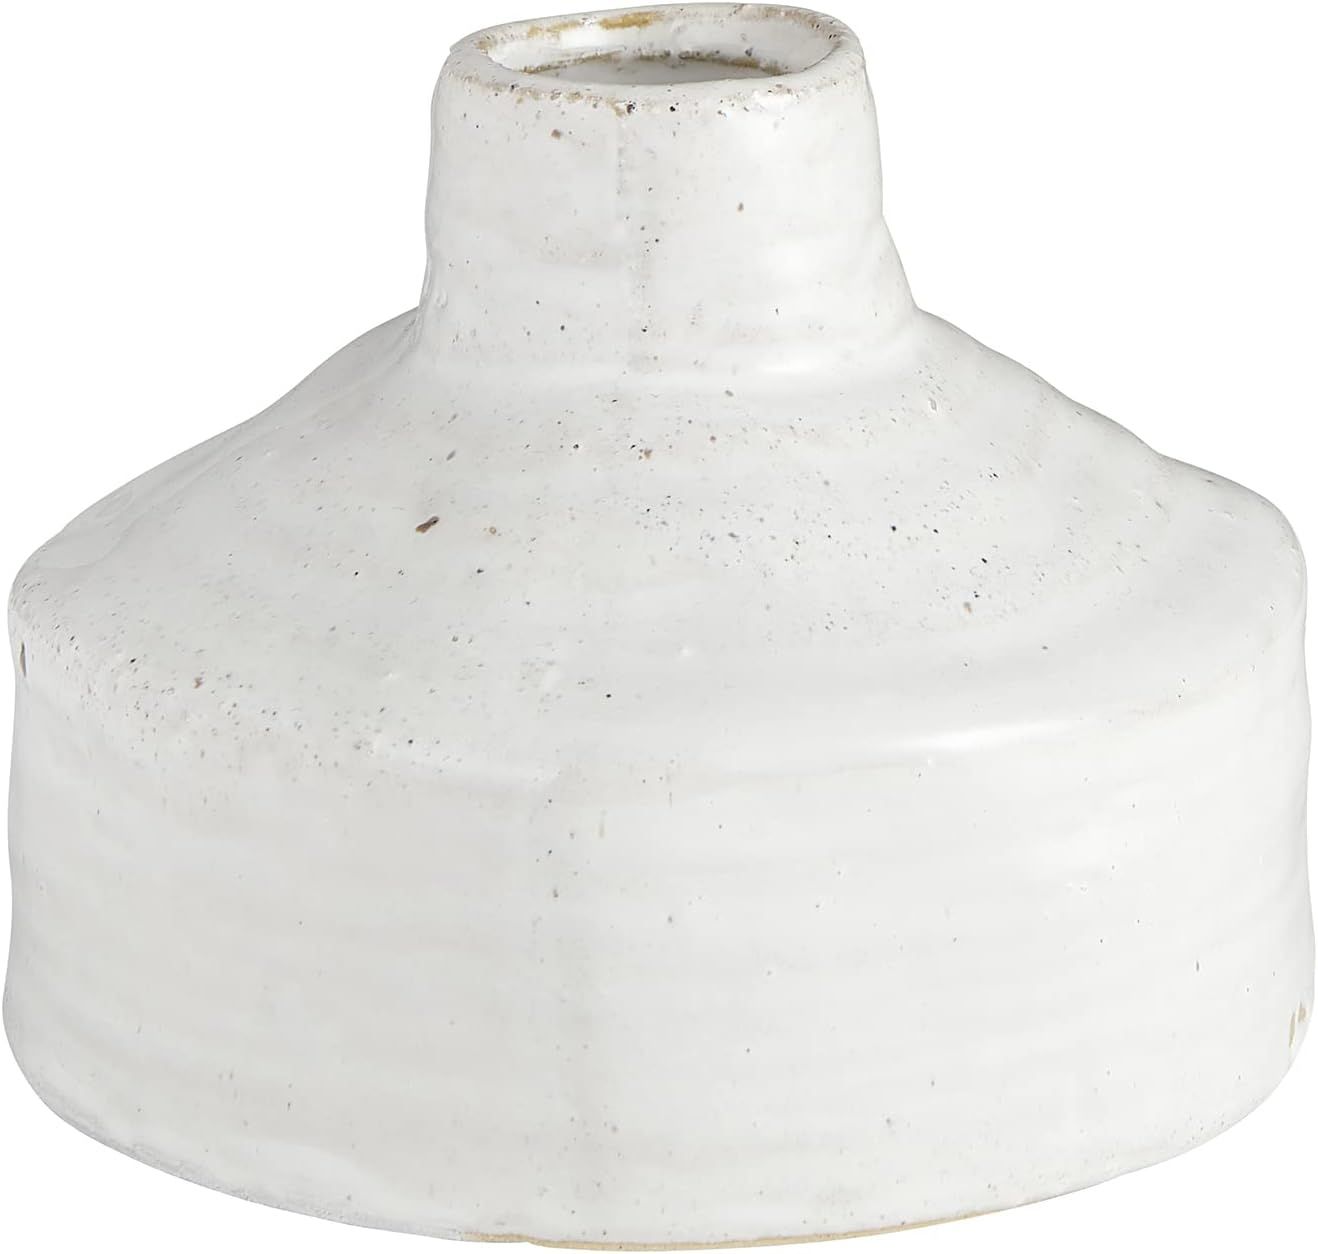 Santa Barbara Design Studio Pure Design Modern Ceramic Pottery Vase for Home Decor, 5.5-Inches Hi... | Amazon (US)